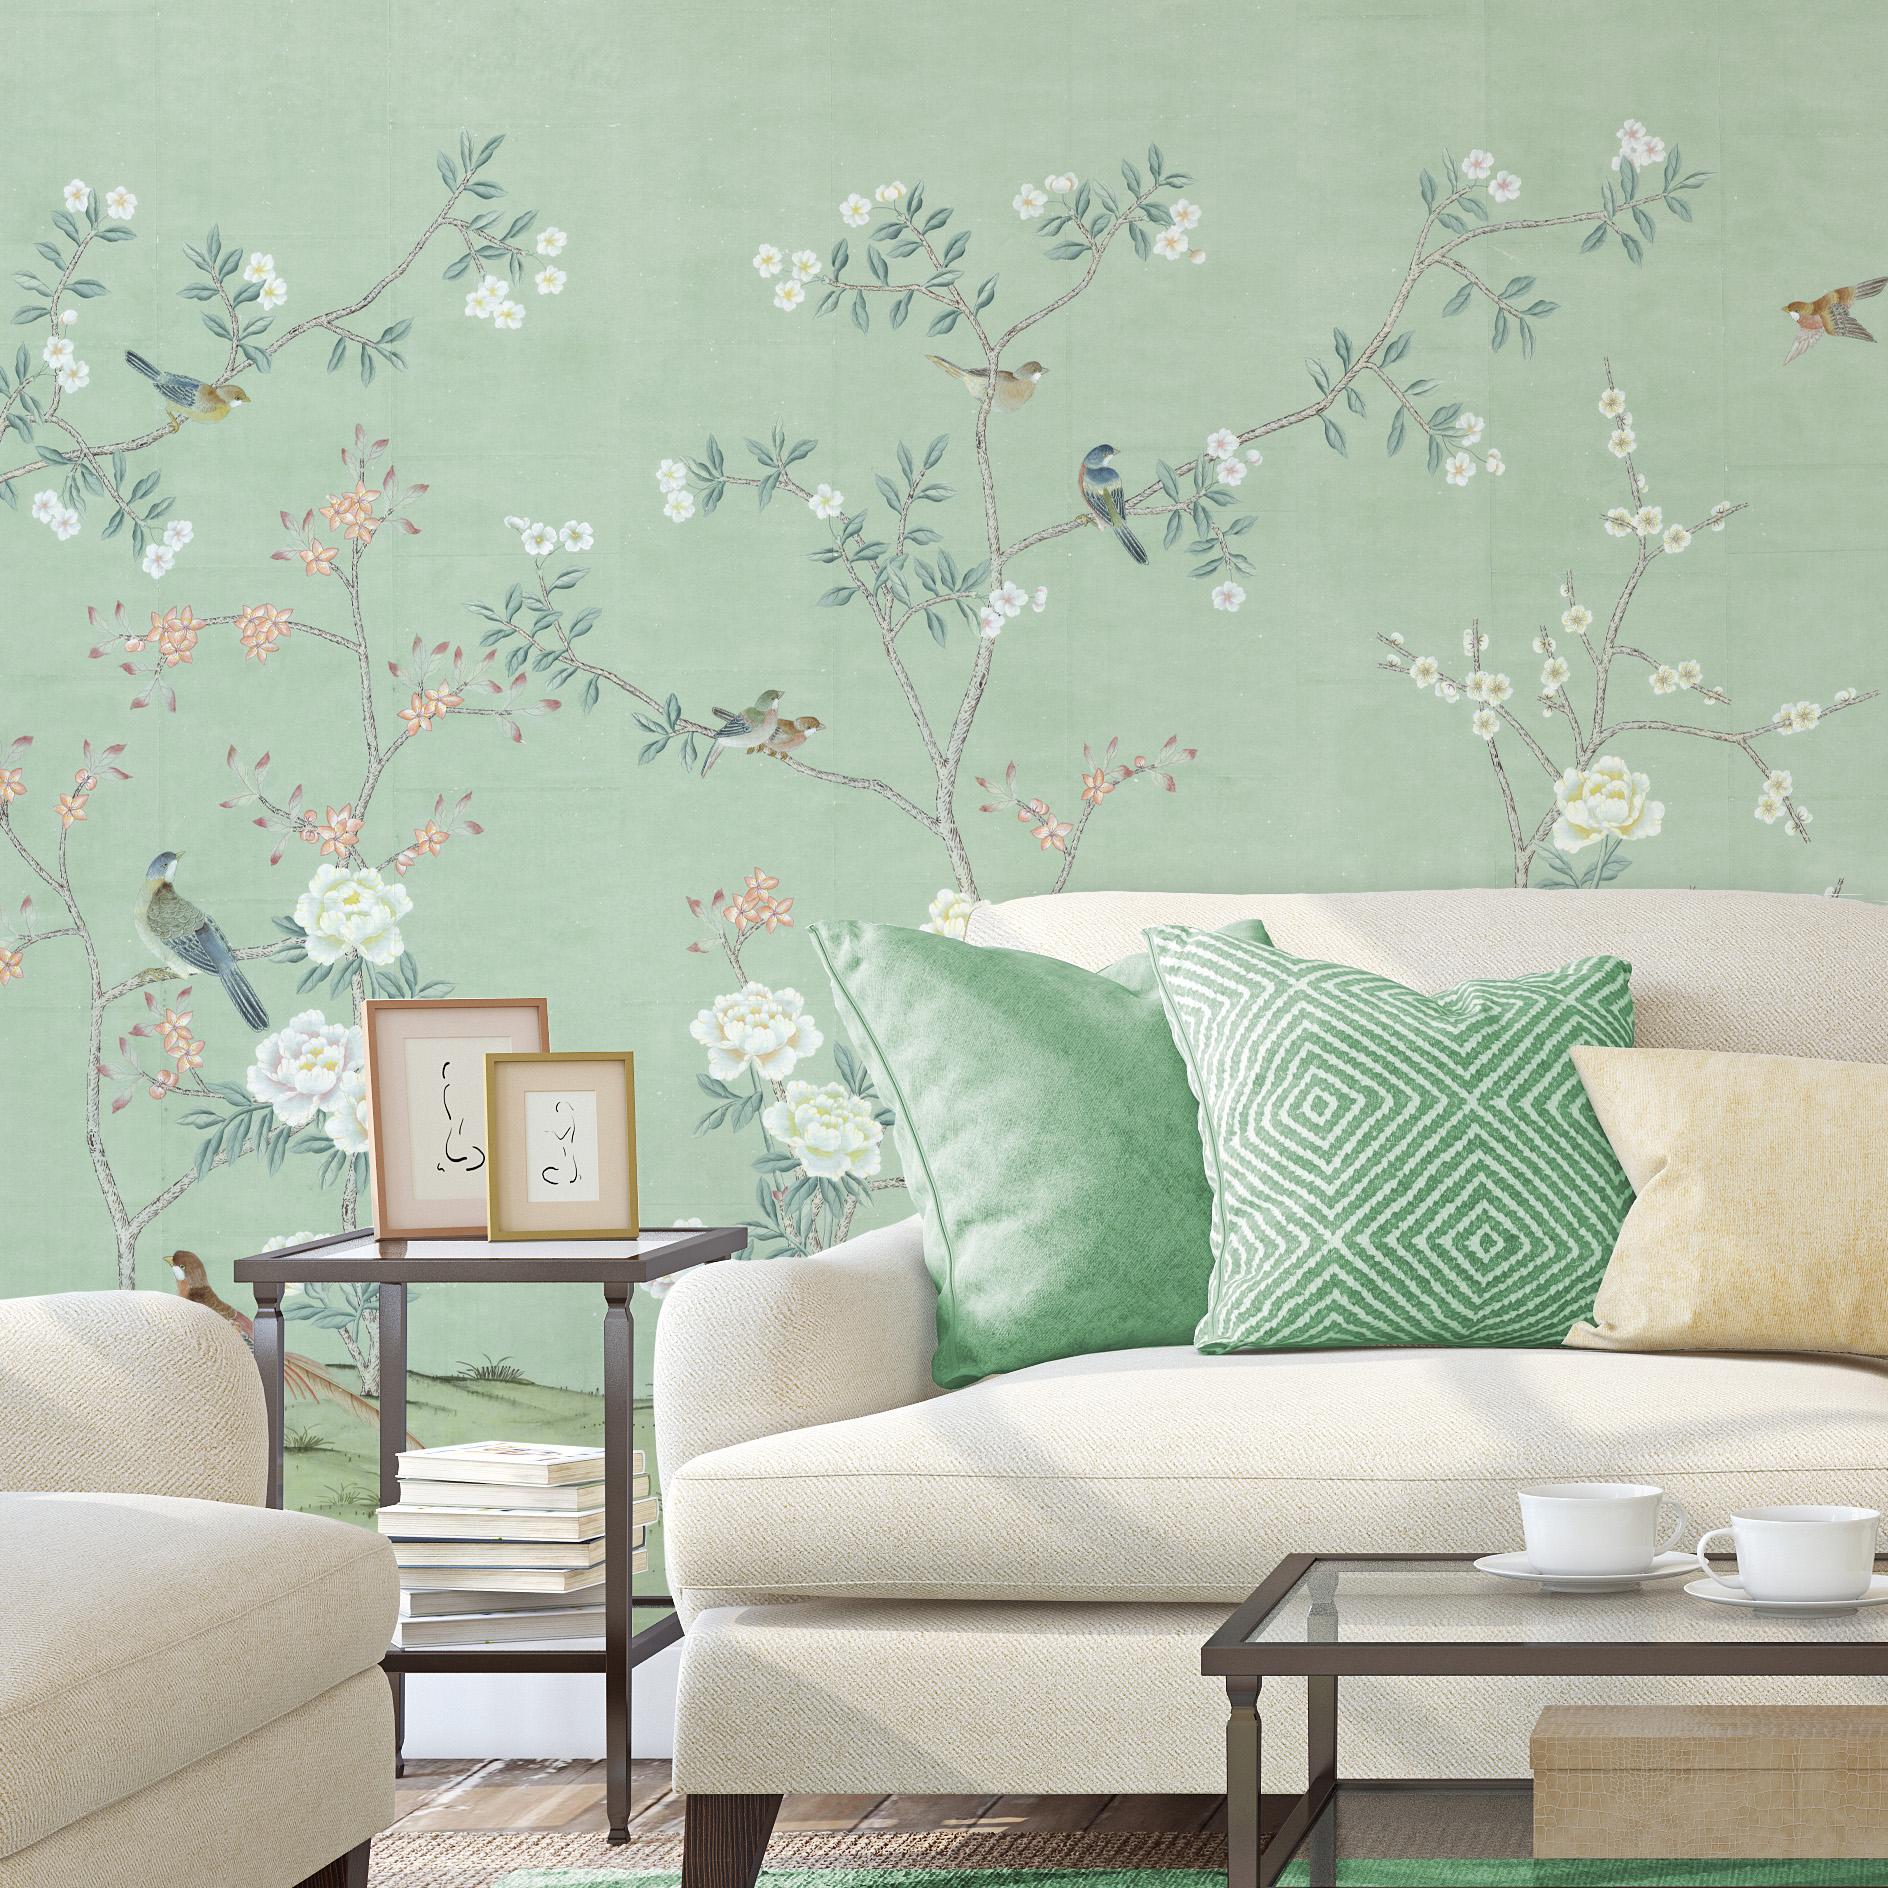 Maysong Sea Mist est un magnifique papier peint mural chinoiserie avec de grandes fleurs blanches sur un fond vert saisissant. Ce motif peut ajouter de l'intérêt visuel ou de la couleur à une chambre, un salon ou toute autre pièce de votre